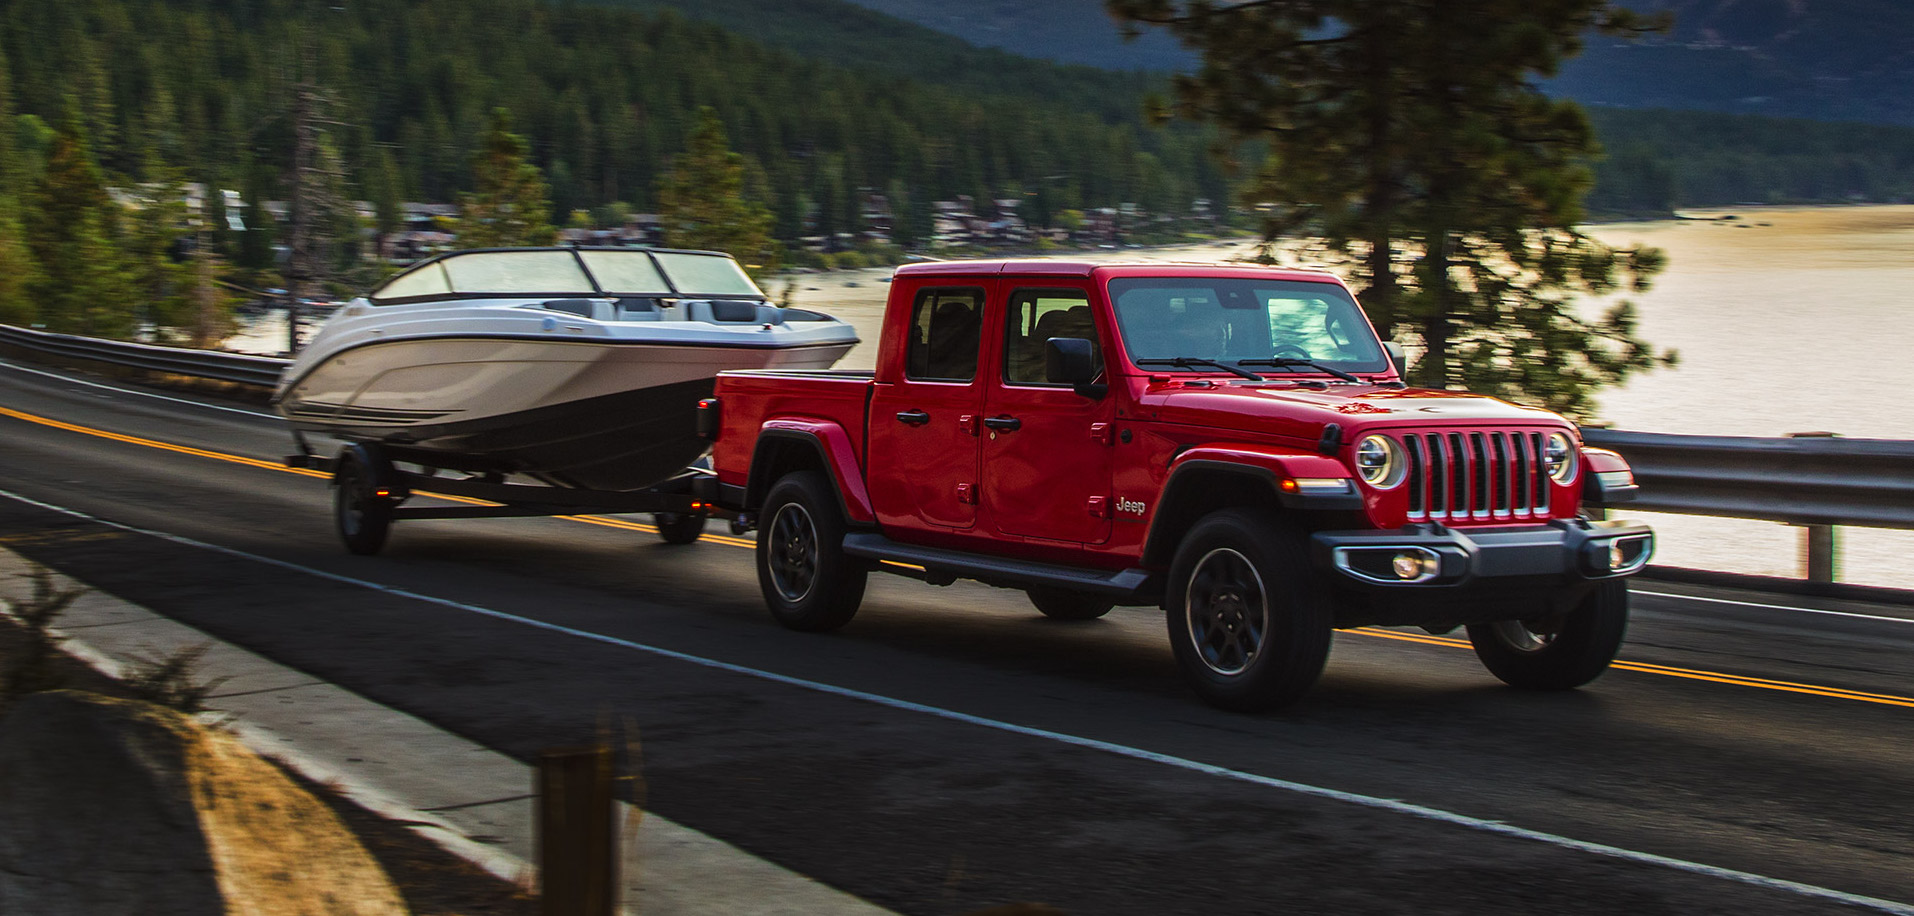 Jeep Gladiator Overland 2021 rouge remorquant un bateau sur l'autoroute au bord d'un lac